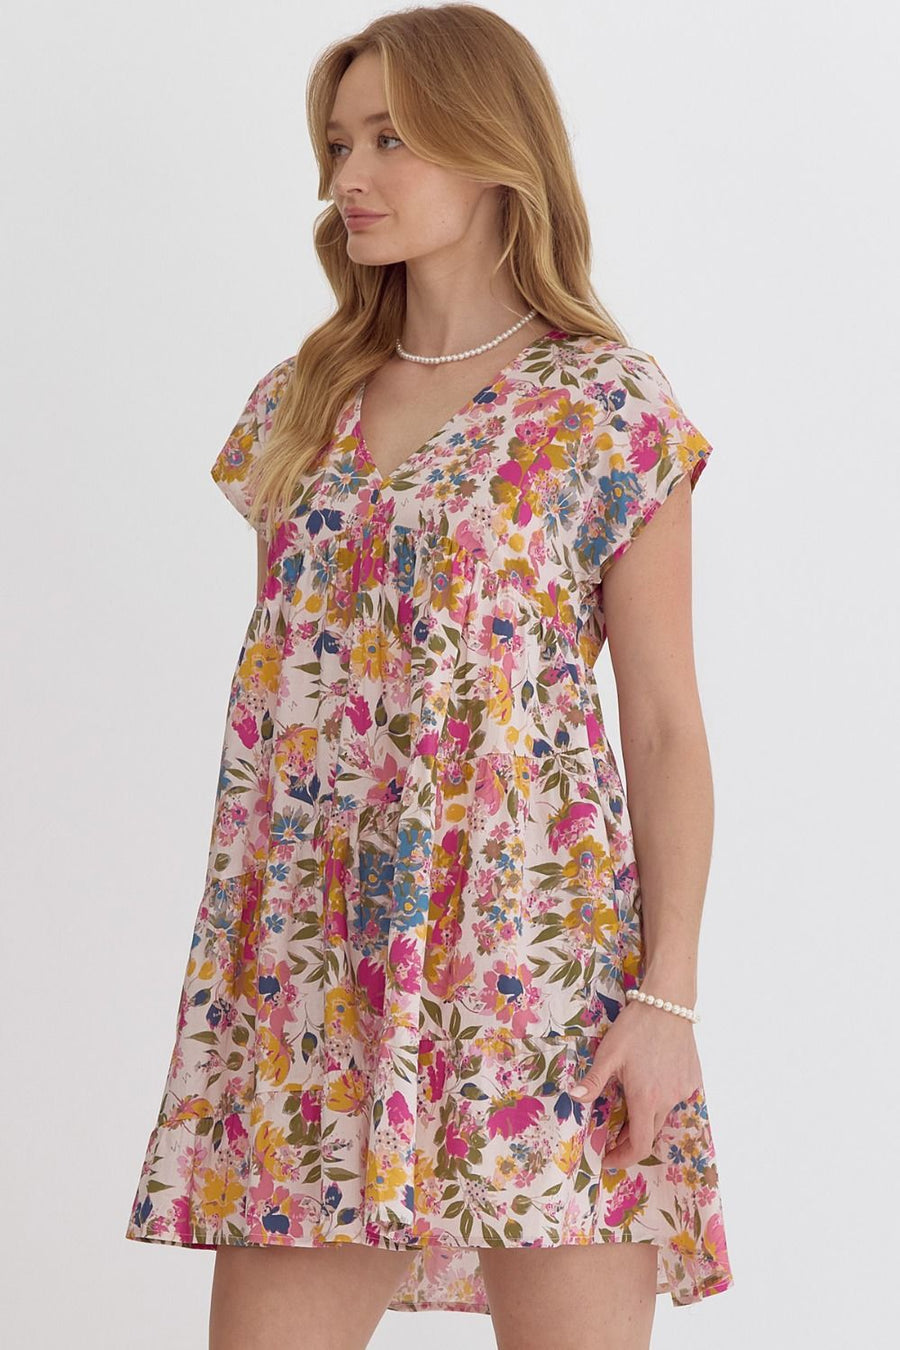 Caroline Floral Print Short Sleeve V-Neck Tiered Mini Dress